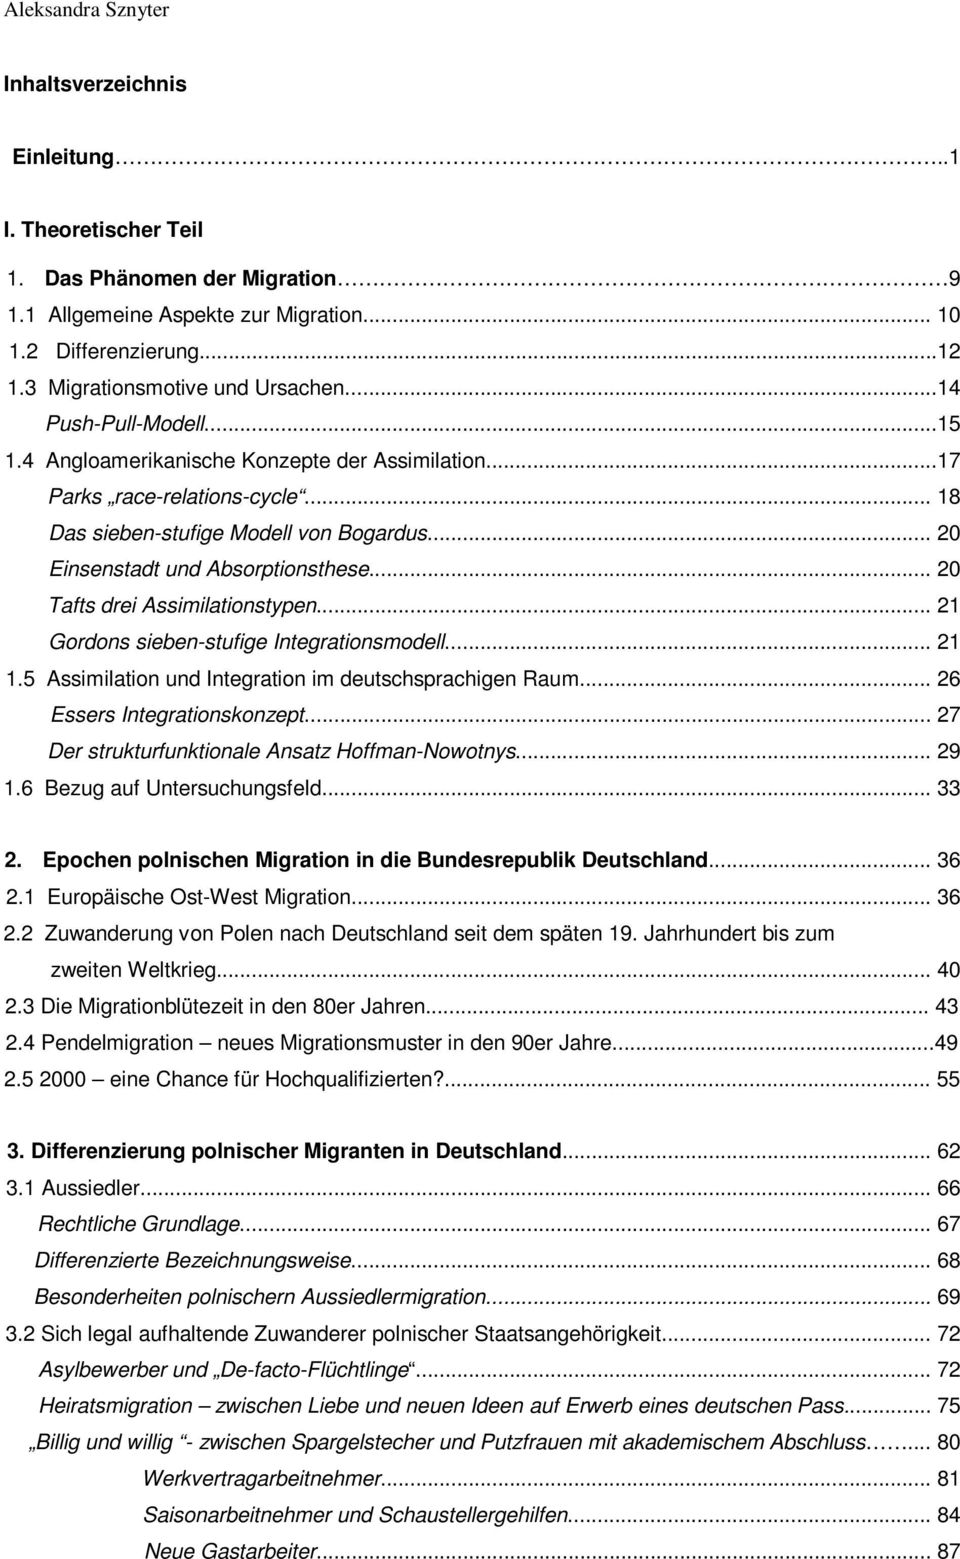 .. 20 Einsenstadt und Absorptionsthese... 20 Tafts drei Assimilationstypen... 21 Gordons sieben-stufige Integrationsmodell... 21 1.5 Assimilation und Integration im deutschsprachigen Raum.